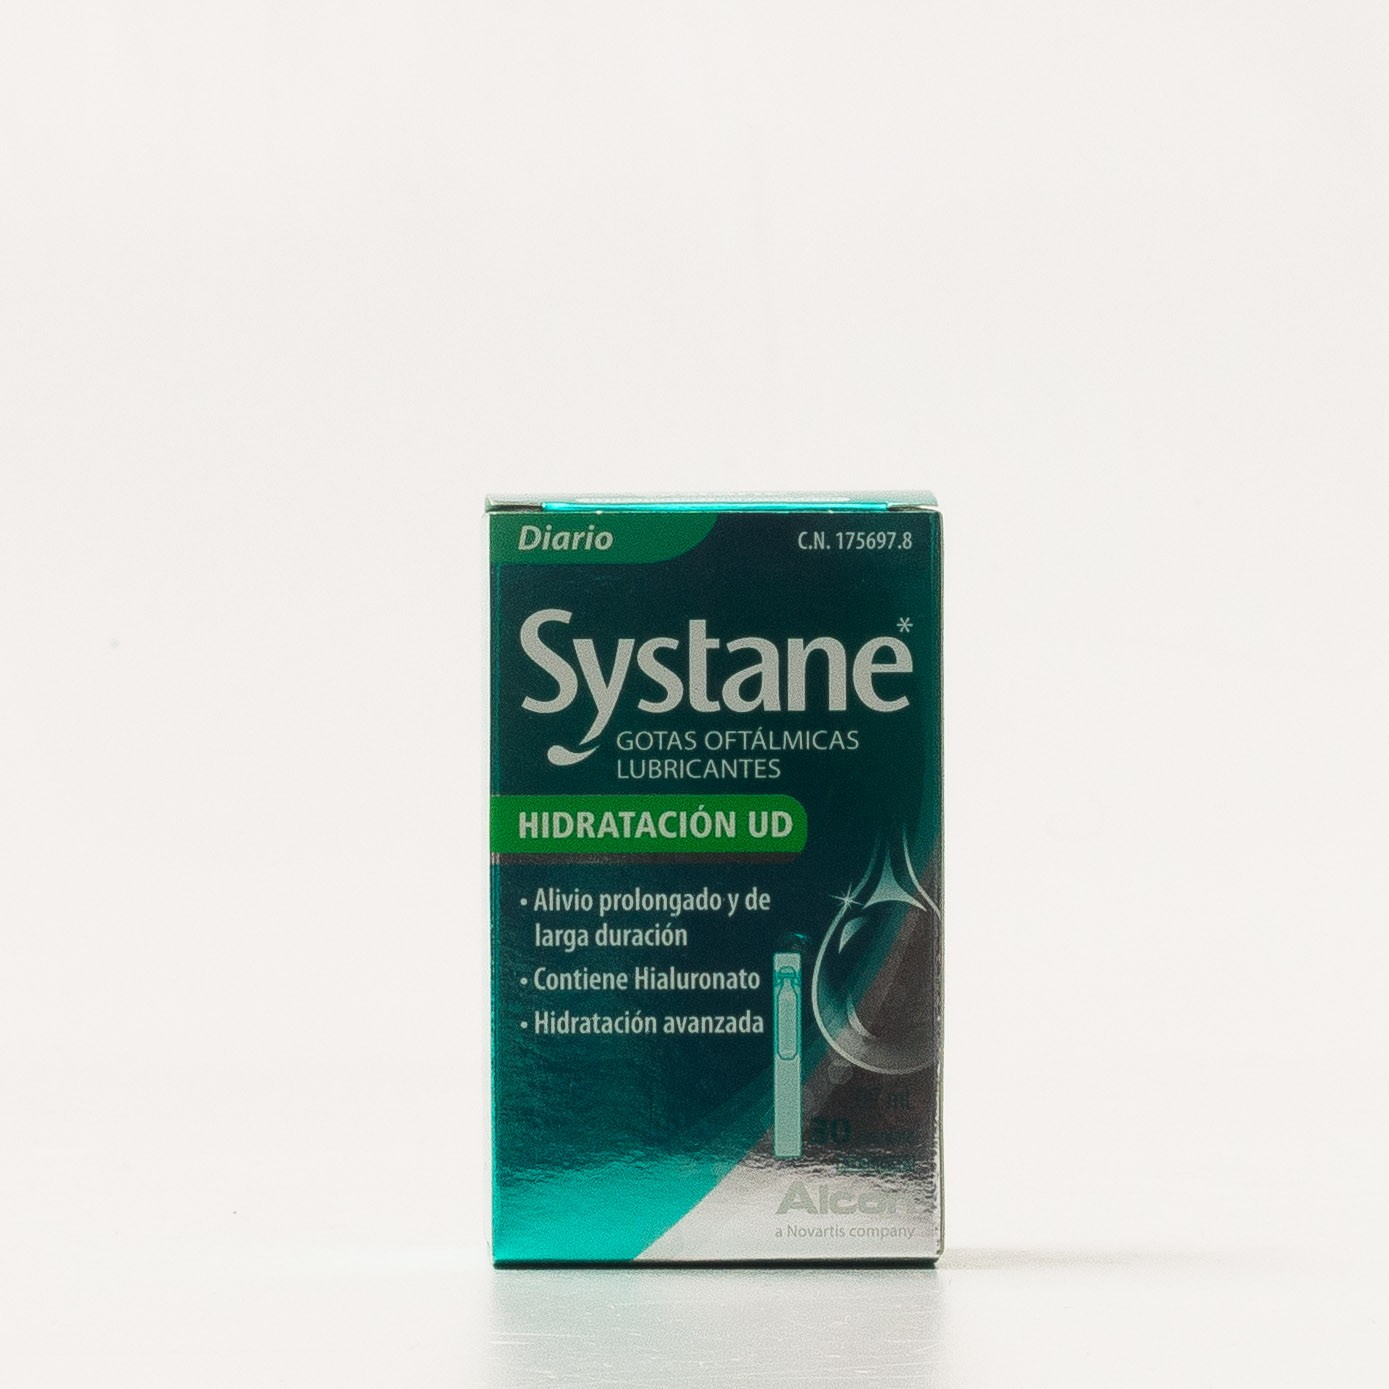 Systane hidratação UD, 30 doses únicas